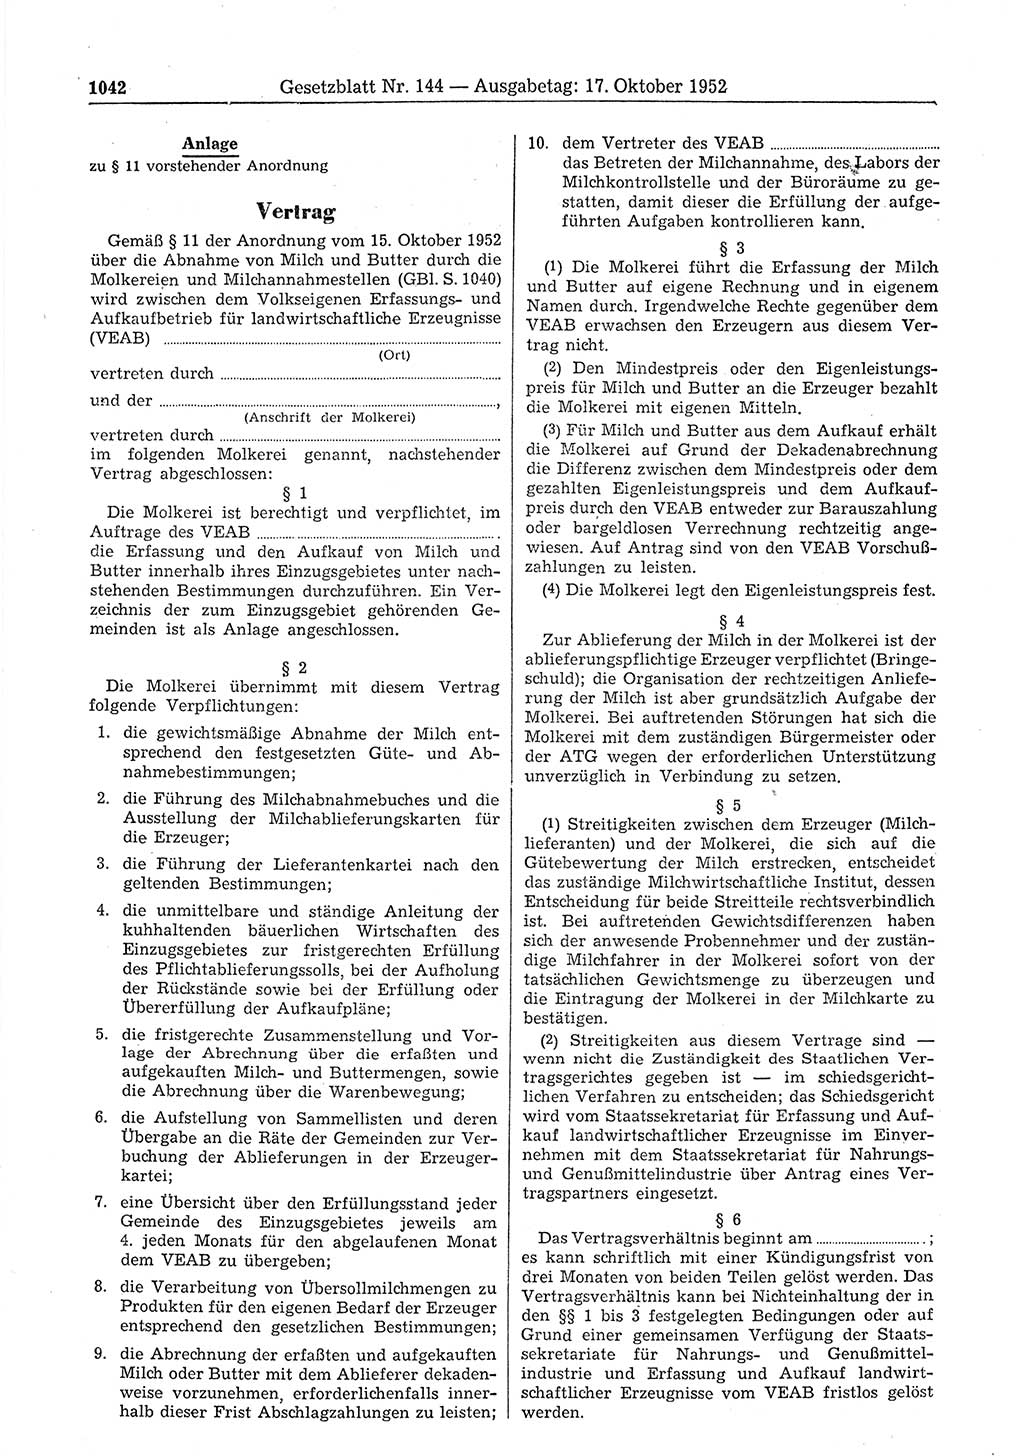 Gesetzblatt (GBl.) der Deutschen Demokratischen Republik (DDR) 1952, Seite 1042 (GBl. DDR 1952, S. 1042)